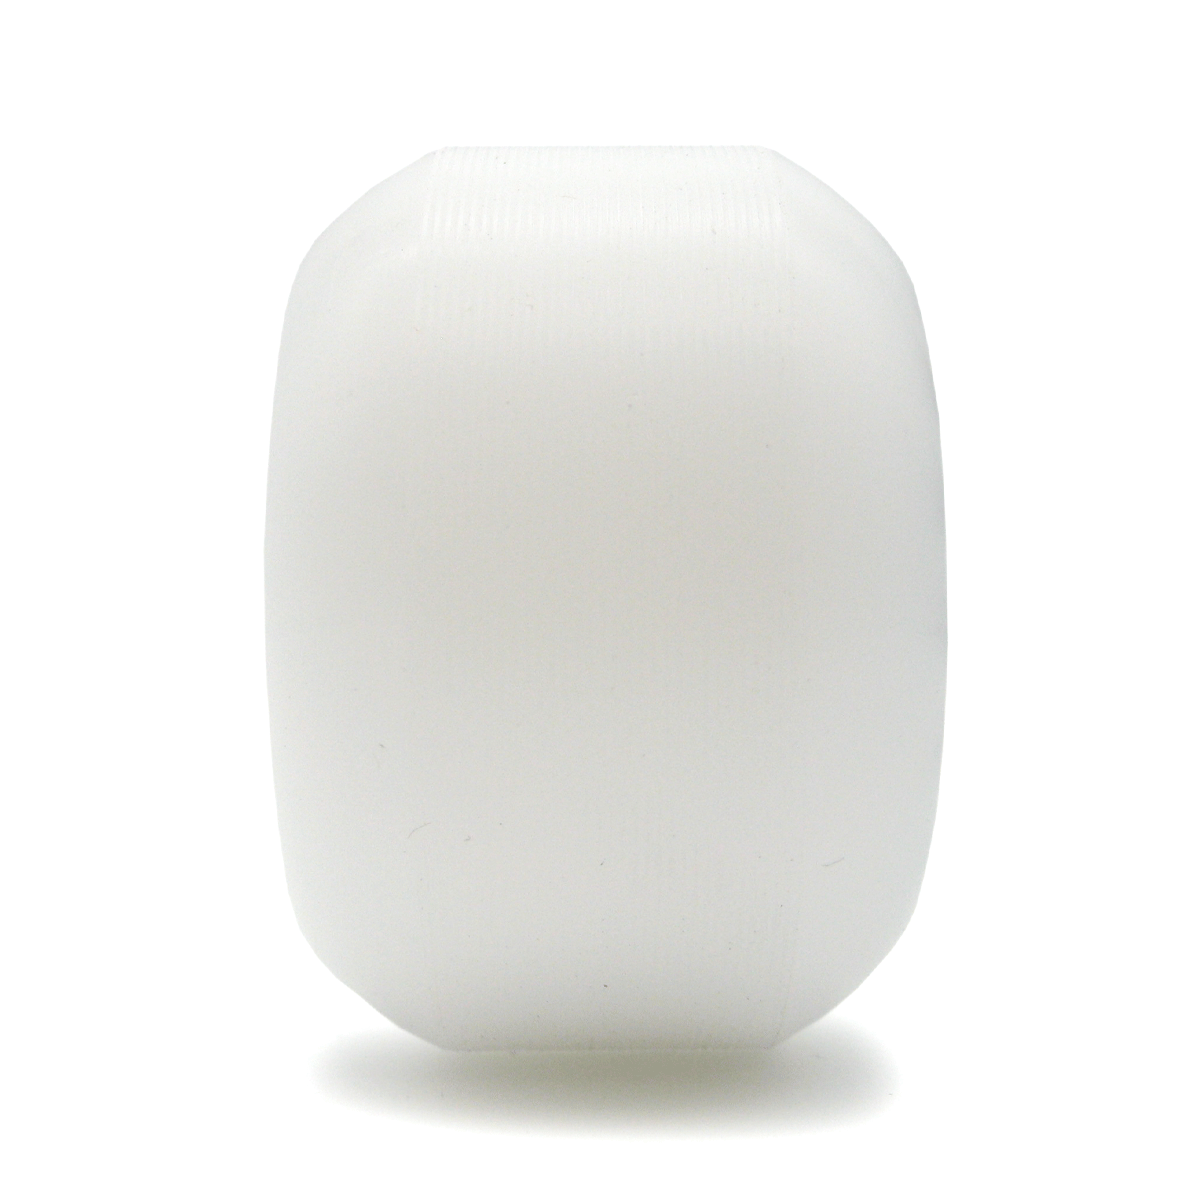 Haze wheels Prime Cut 99A 54mm white